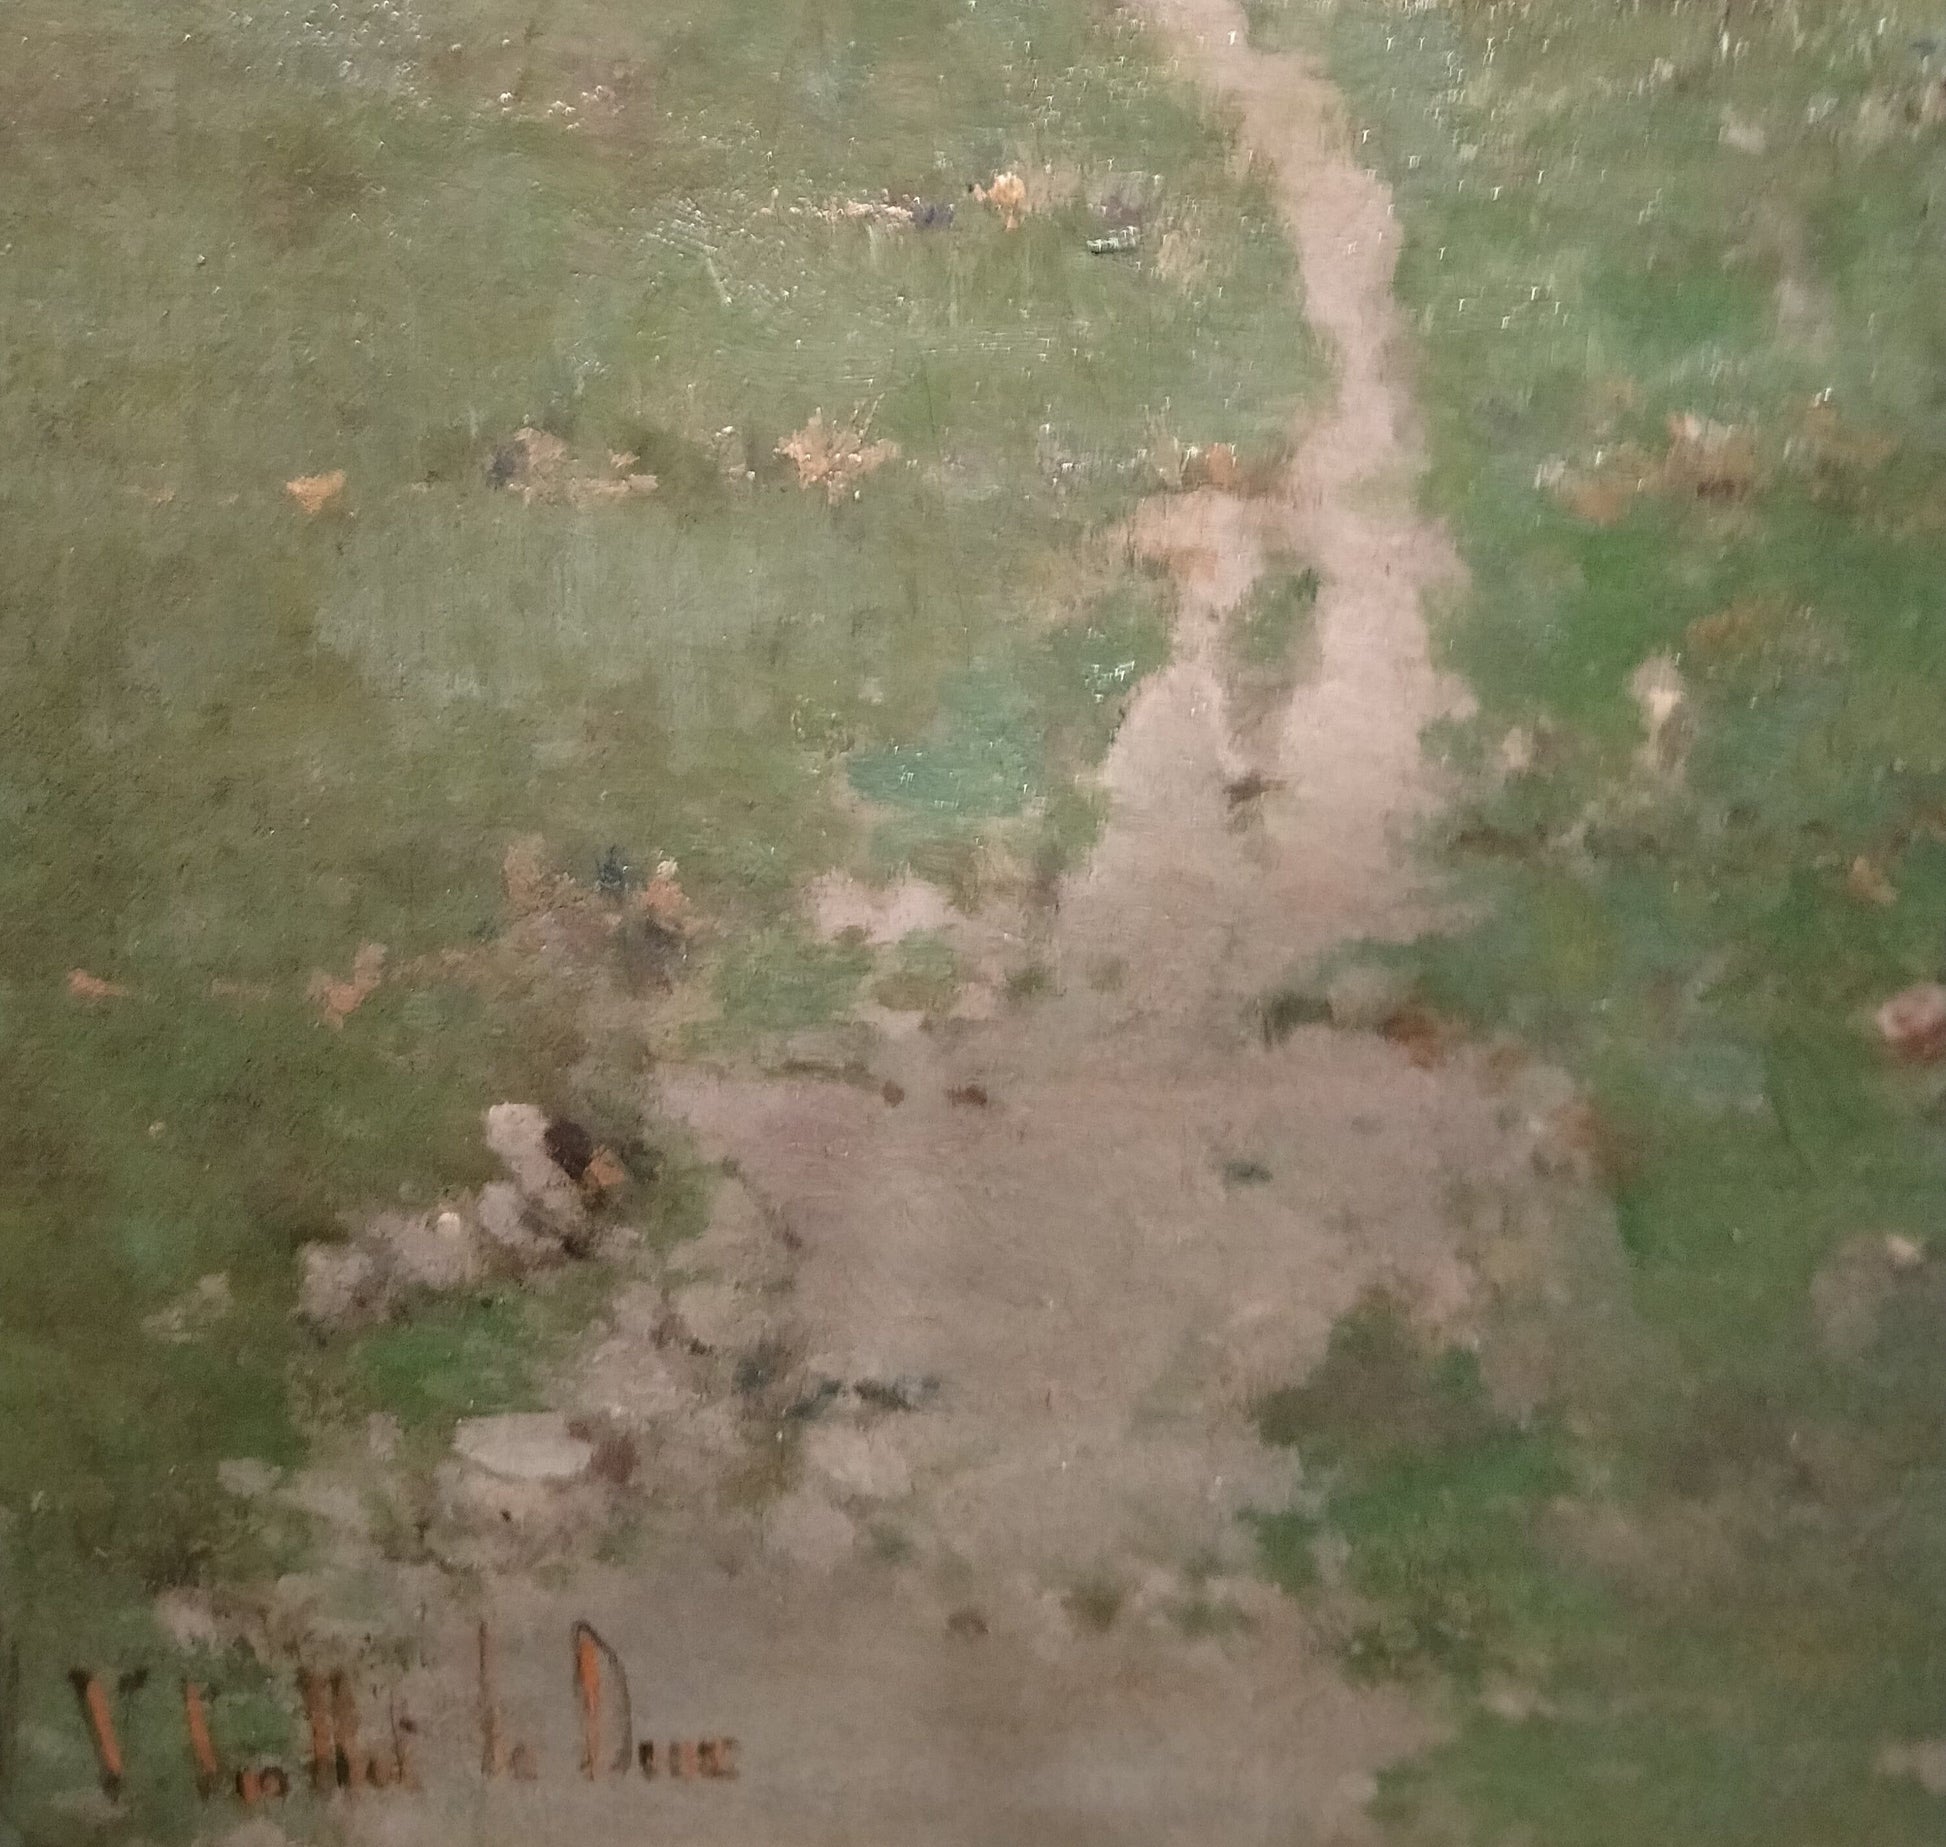 Antico olio su tela raffigurante paesaggio campestre impressionista 